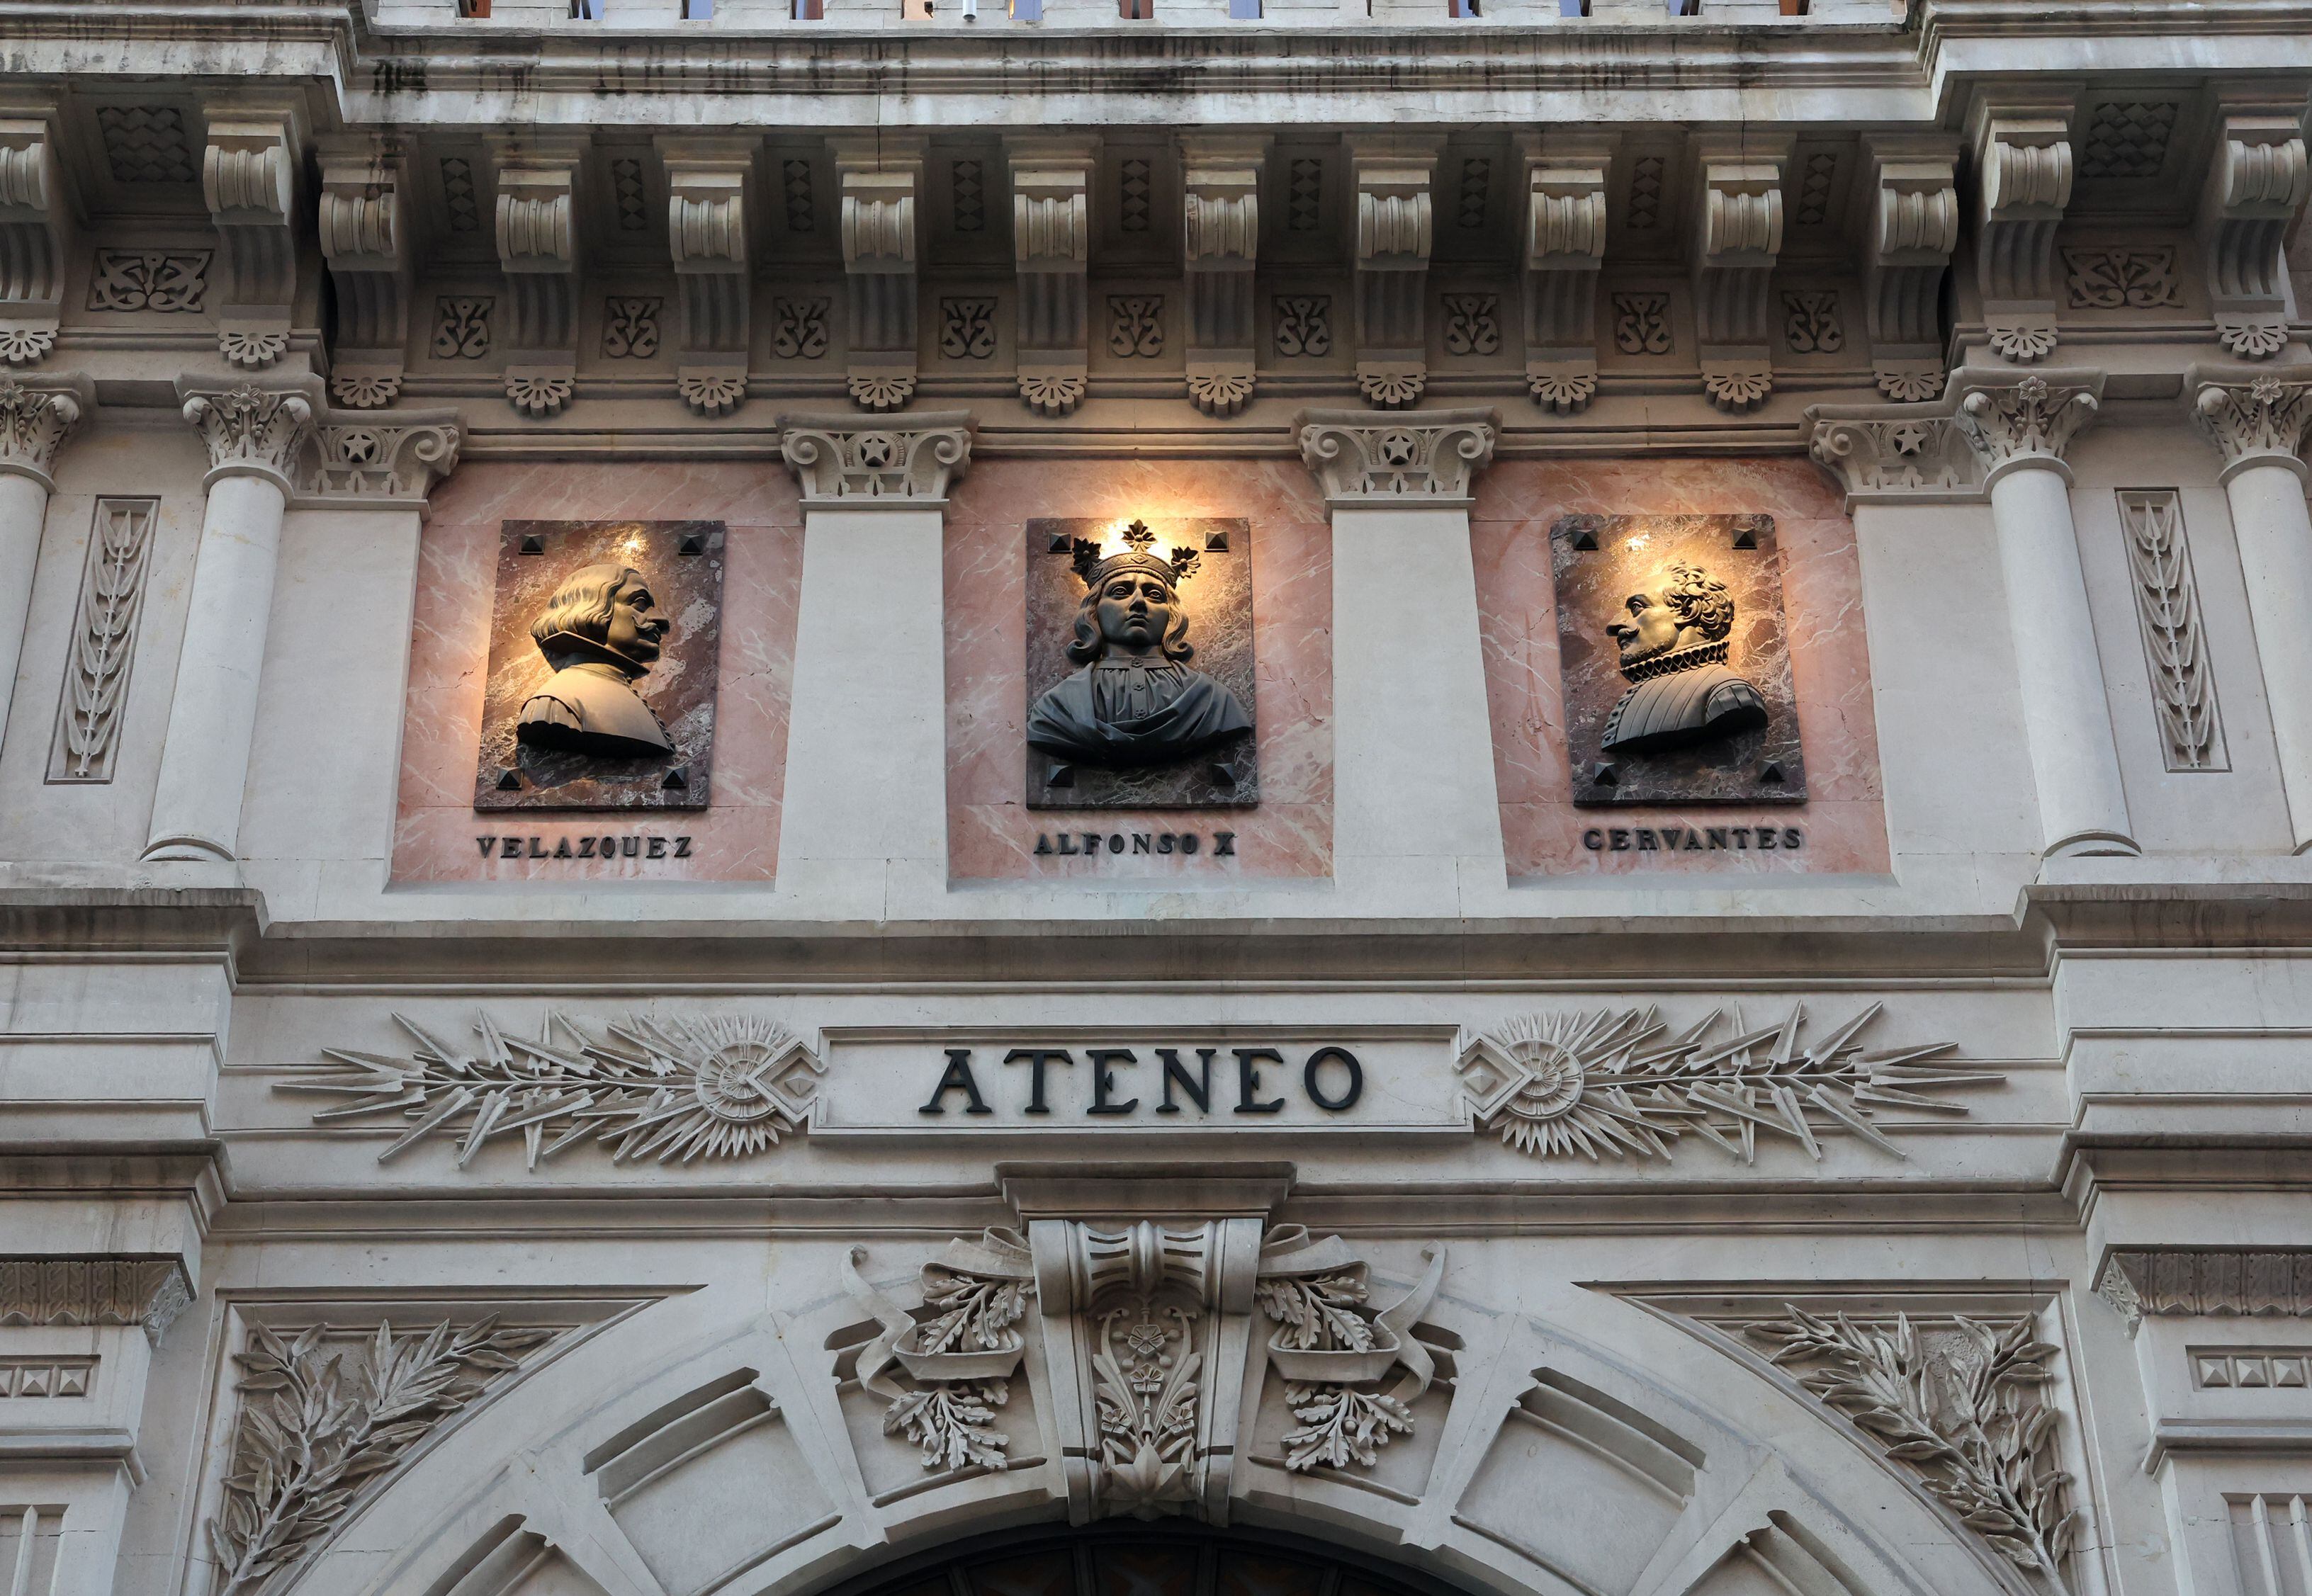 La fachada del Ateneo de Madrid, en el número 21 de la calle del Prado.